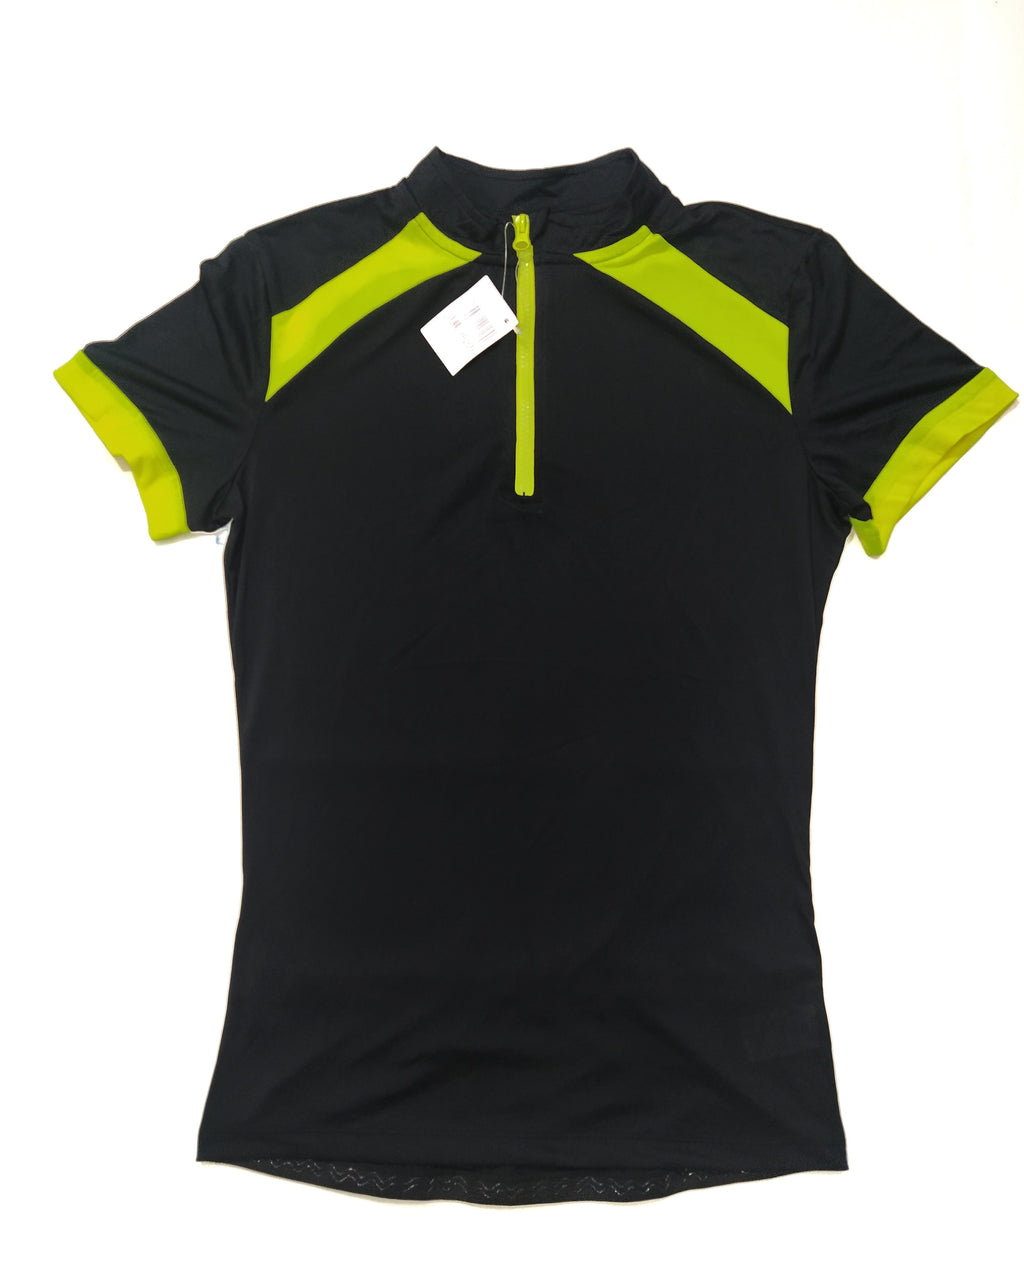 Newcential Men's Biking Shirt (Black/Green)